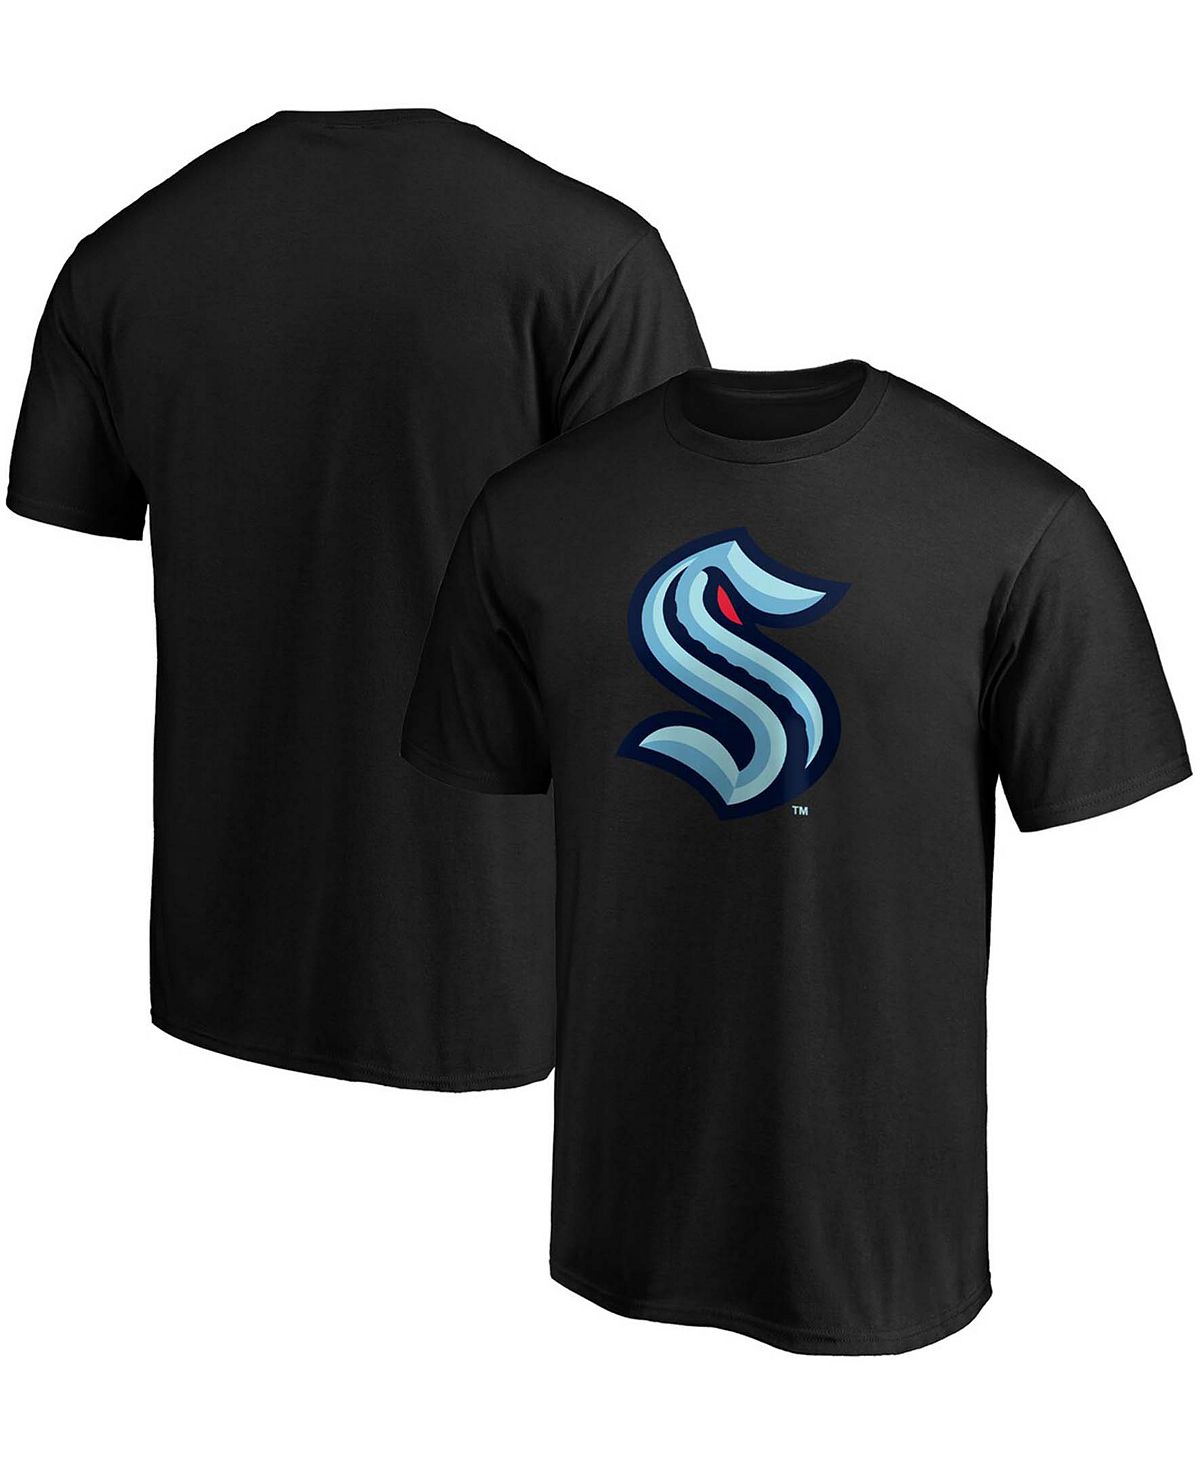 Мужская черная футболка с логотипом seattle kraken primary Fanatics, черный